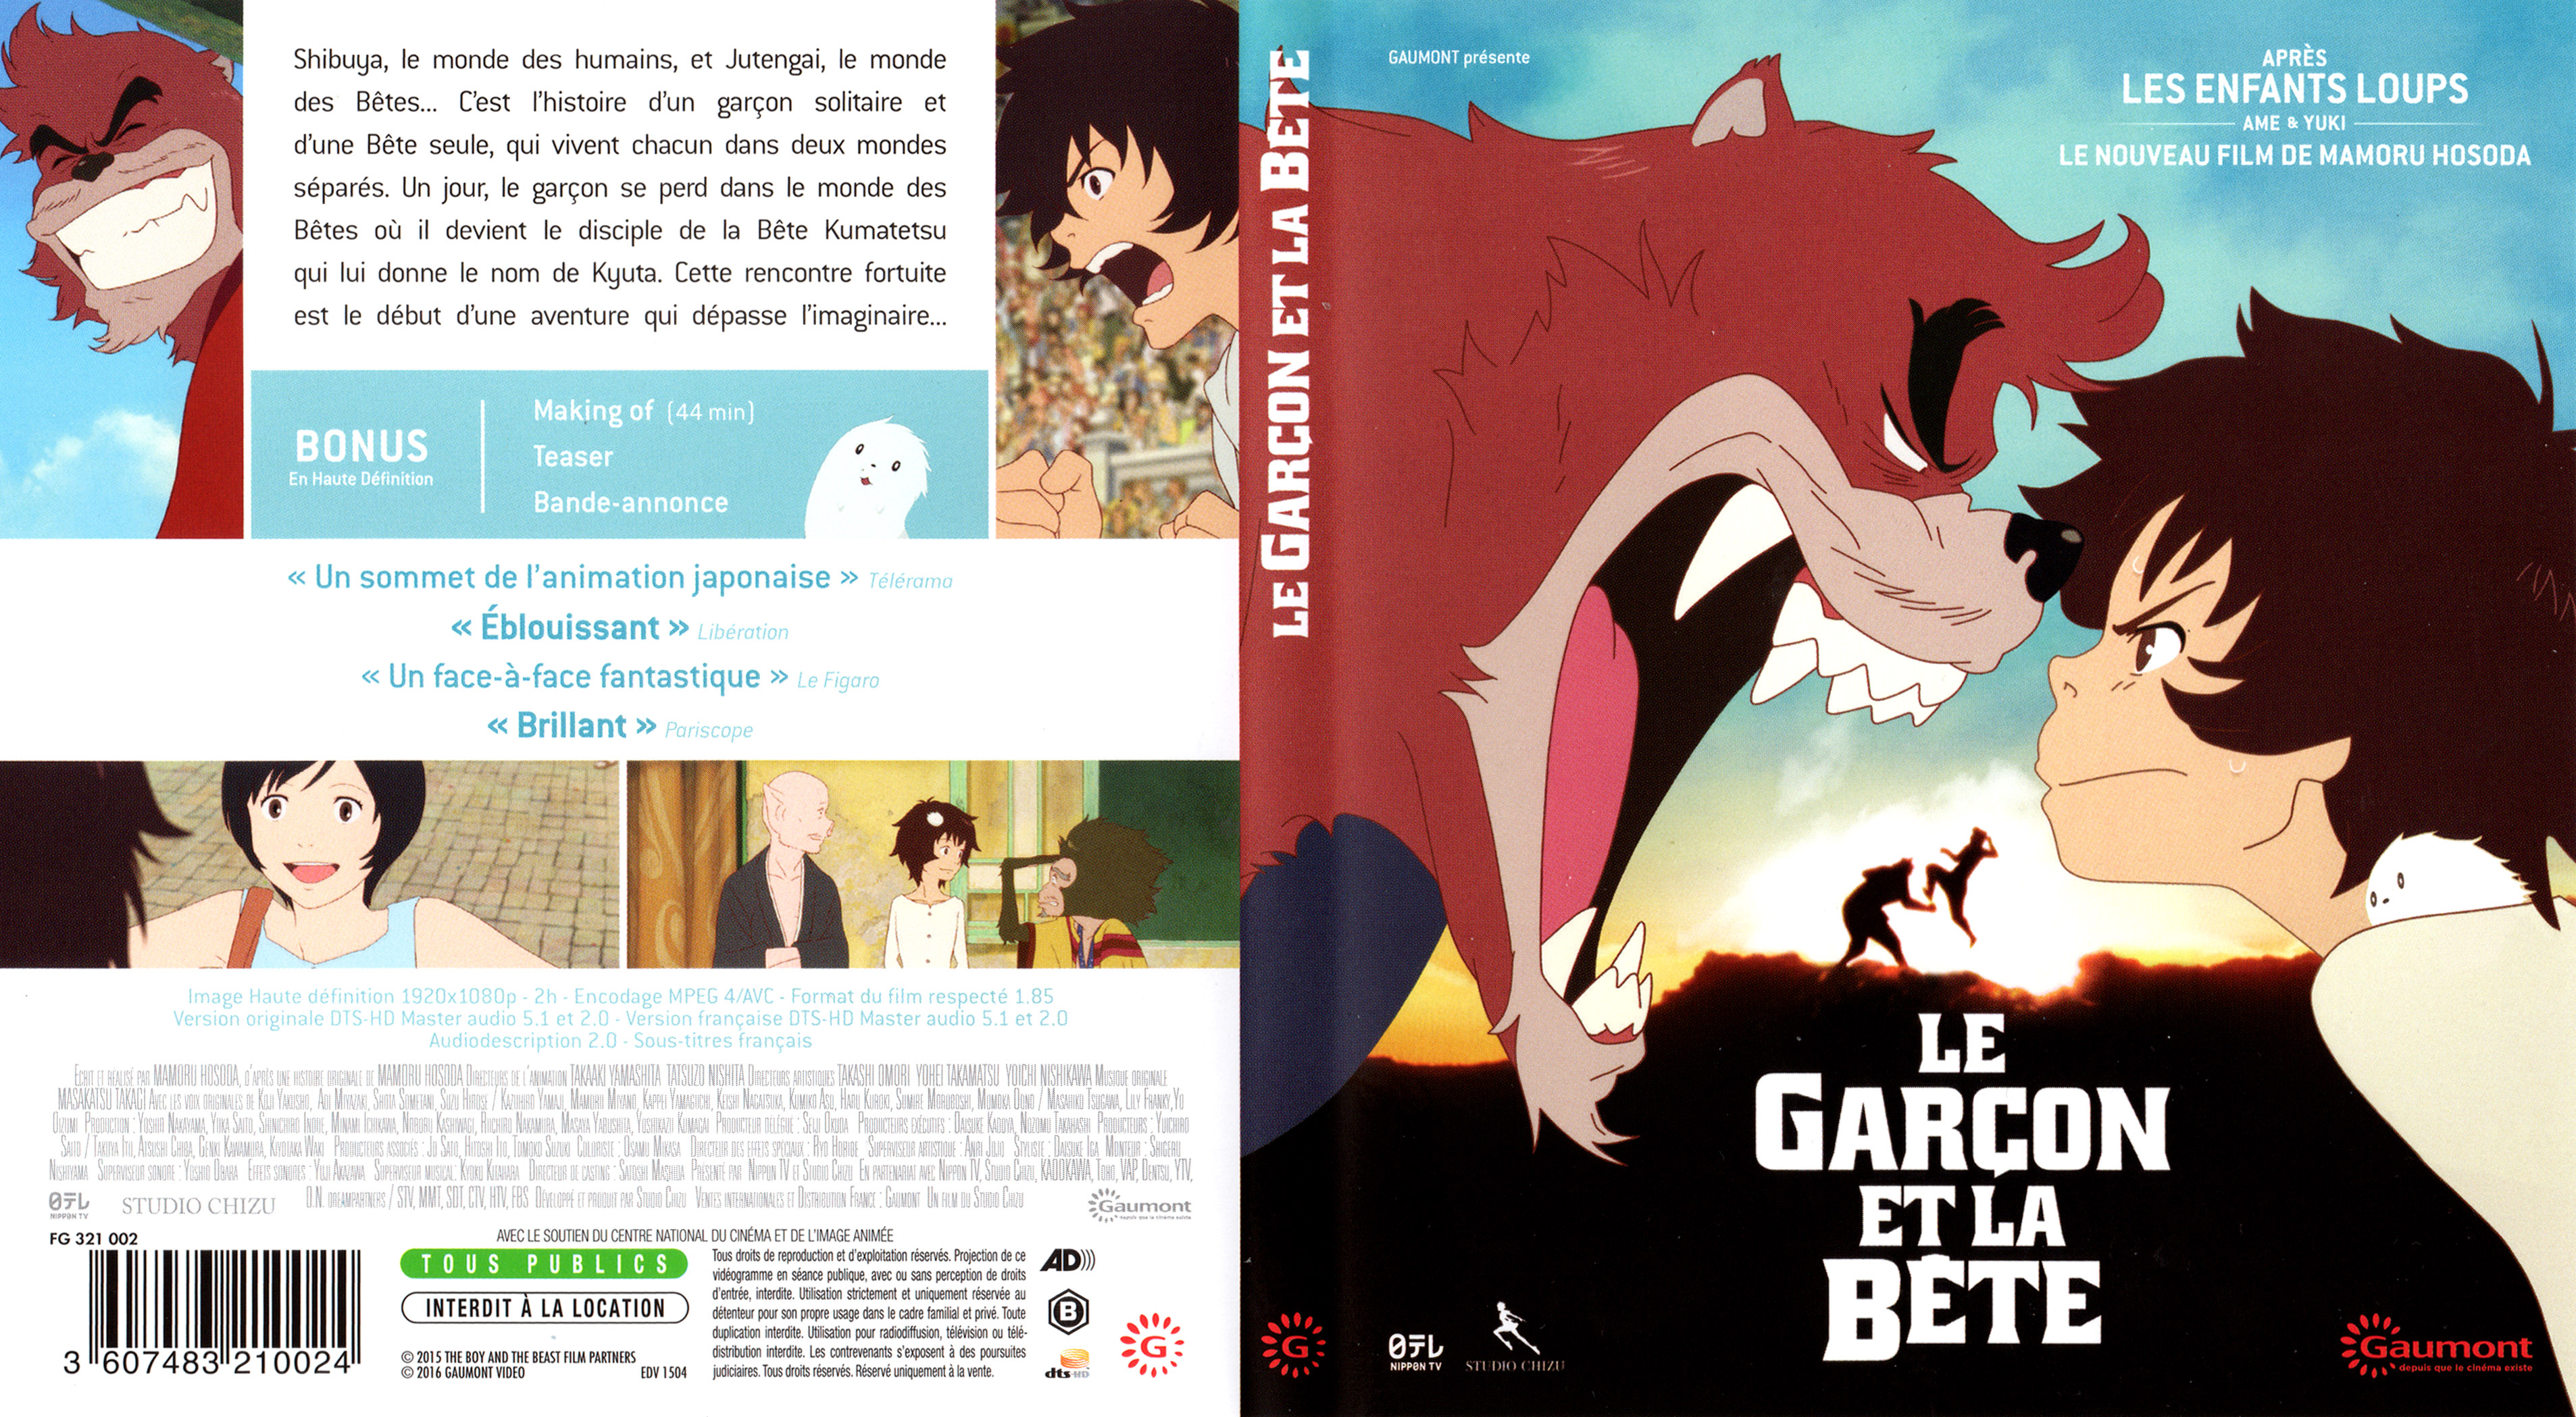 Jaquette DVD de Le garcon et la bete (BLU-RAY) - Cinéma Passion